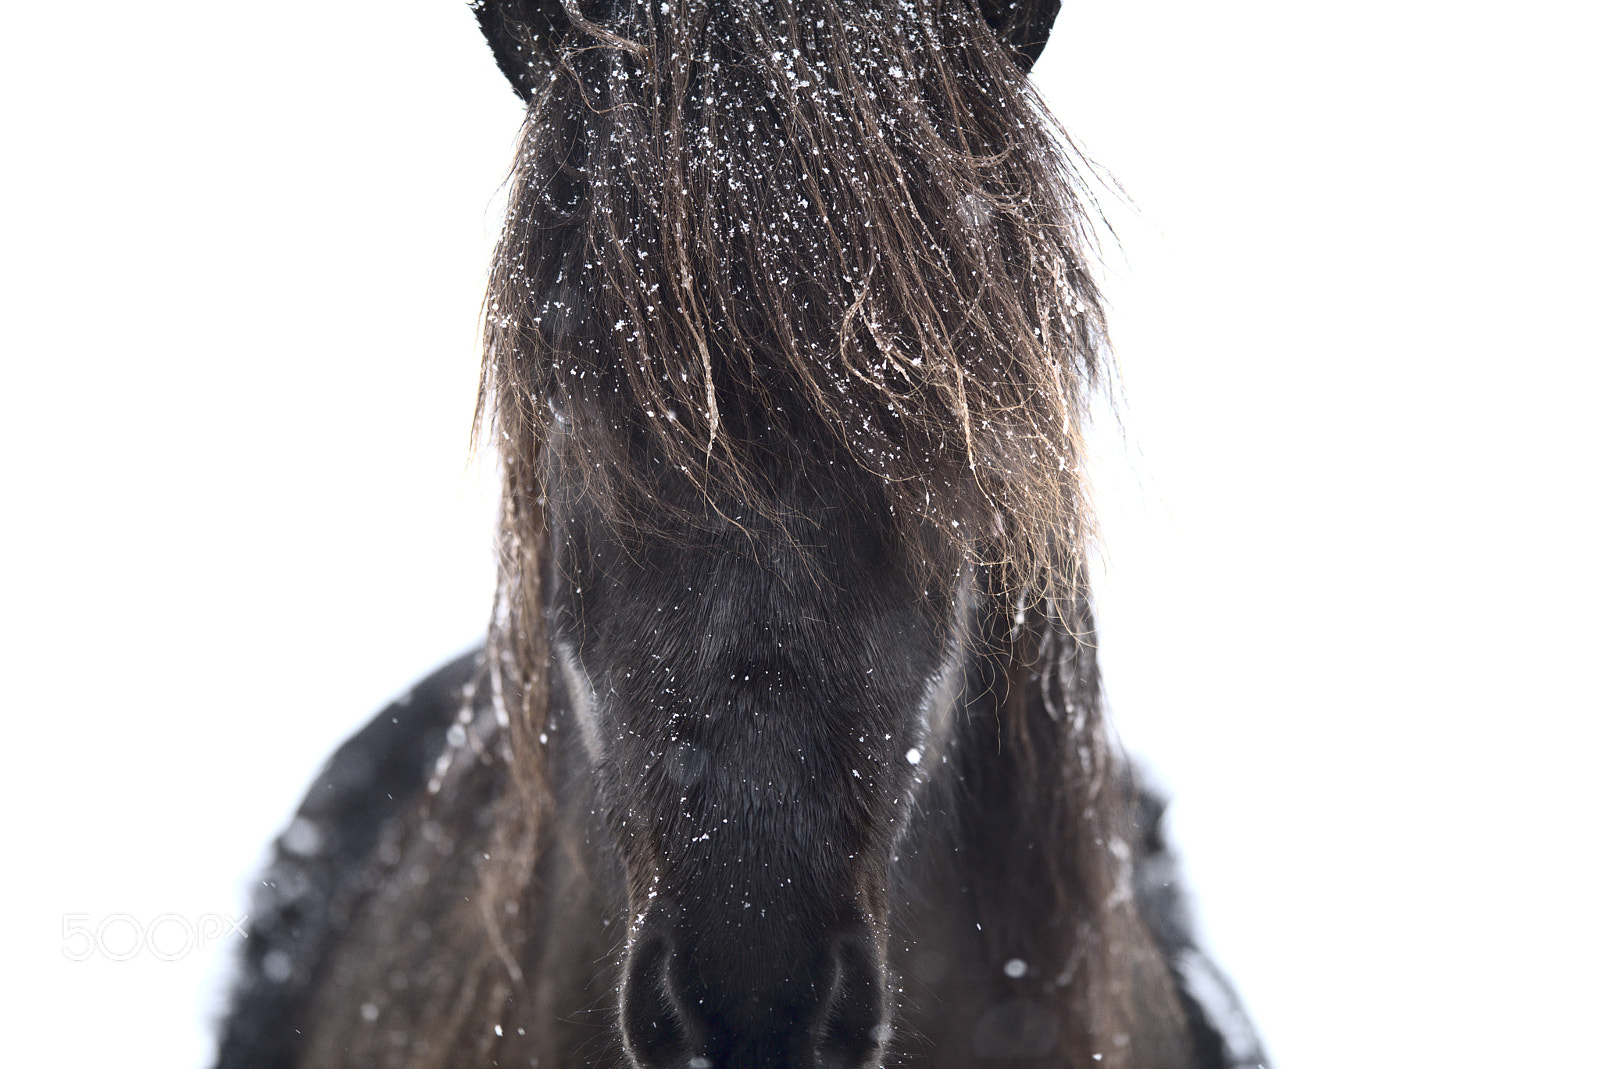 Nikon D810 sample photo. Horse portrait #2 photography